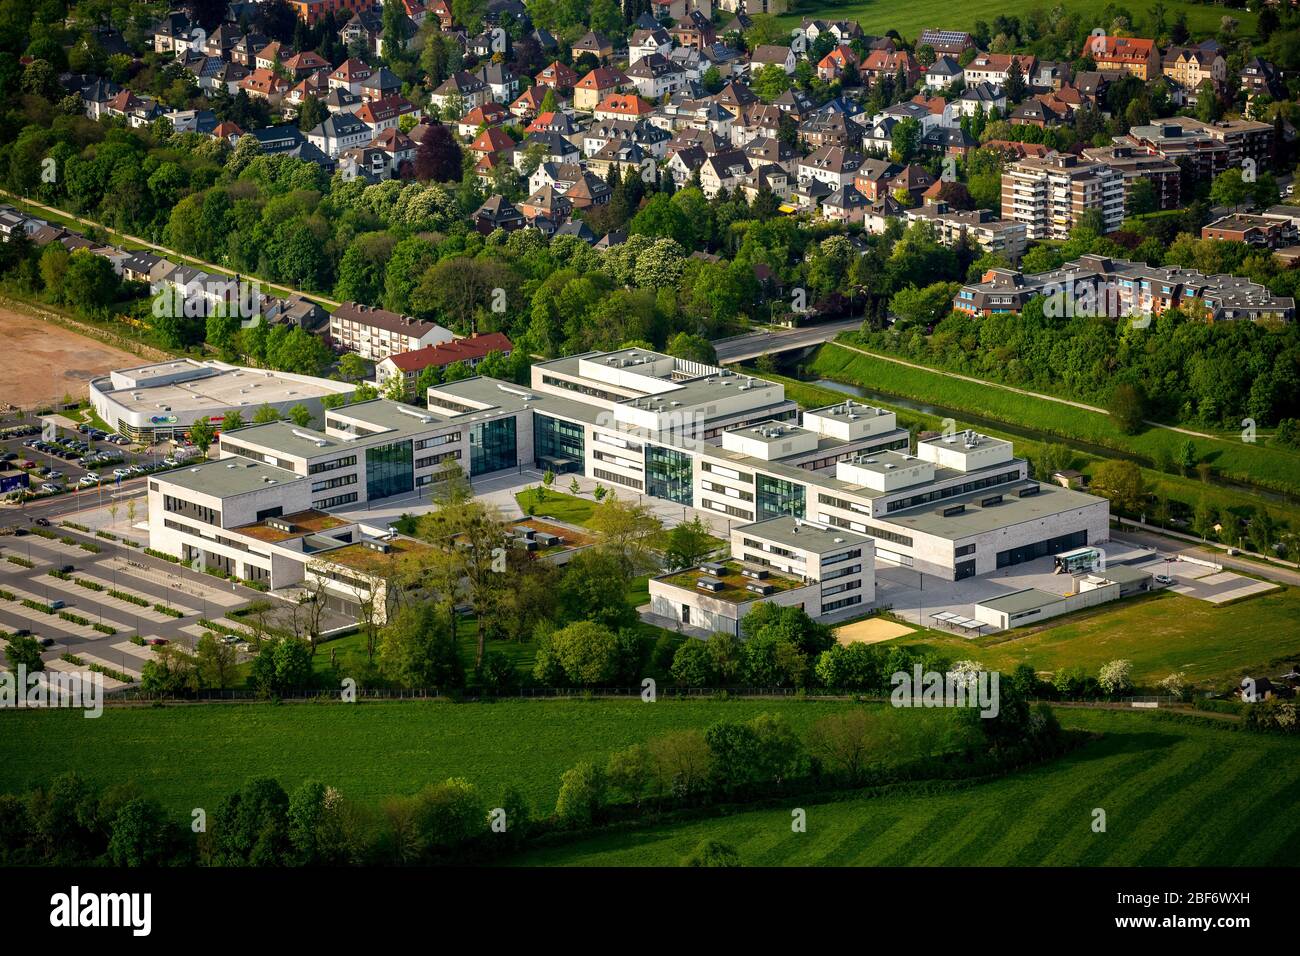 Hamm Hochschule Hamm-Lippstadt Campus der Hochschule für Angewandte  Wissenschaften, Hamm, Ruhrgebiet, Nordrhein-Westfalen, Deutschland  Stockfotografie - Alamy